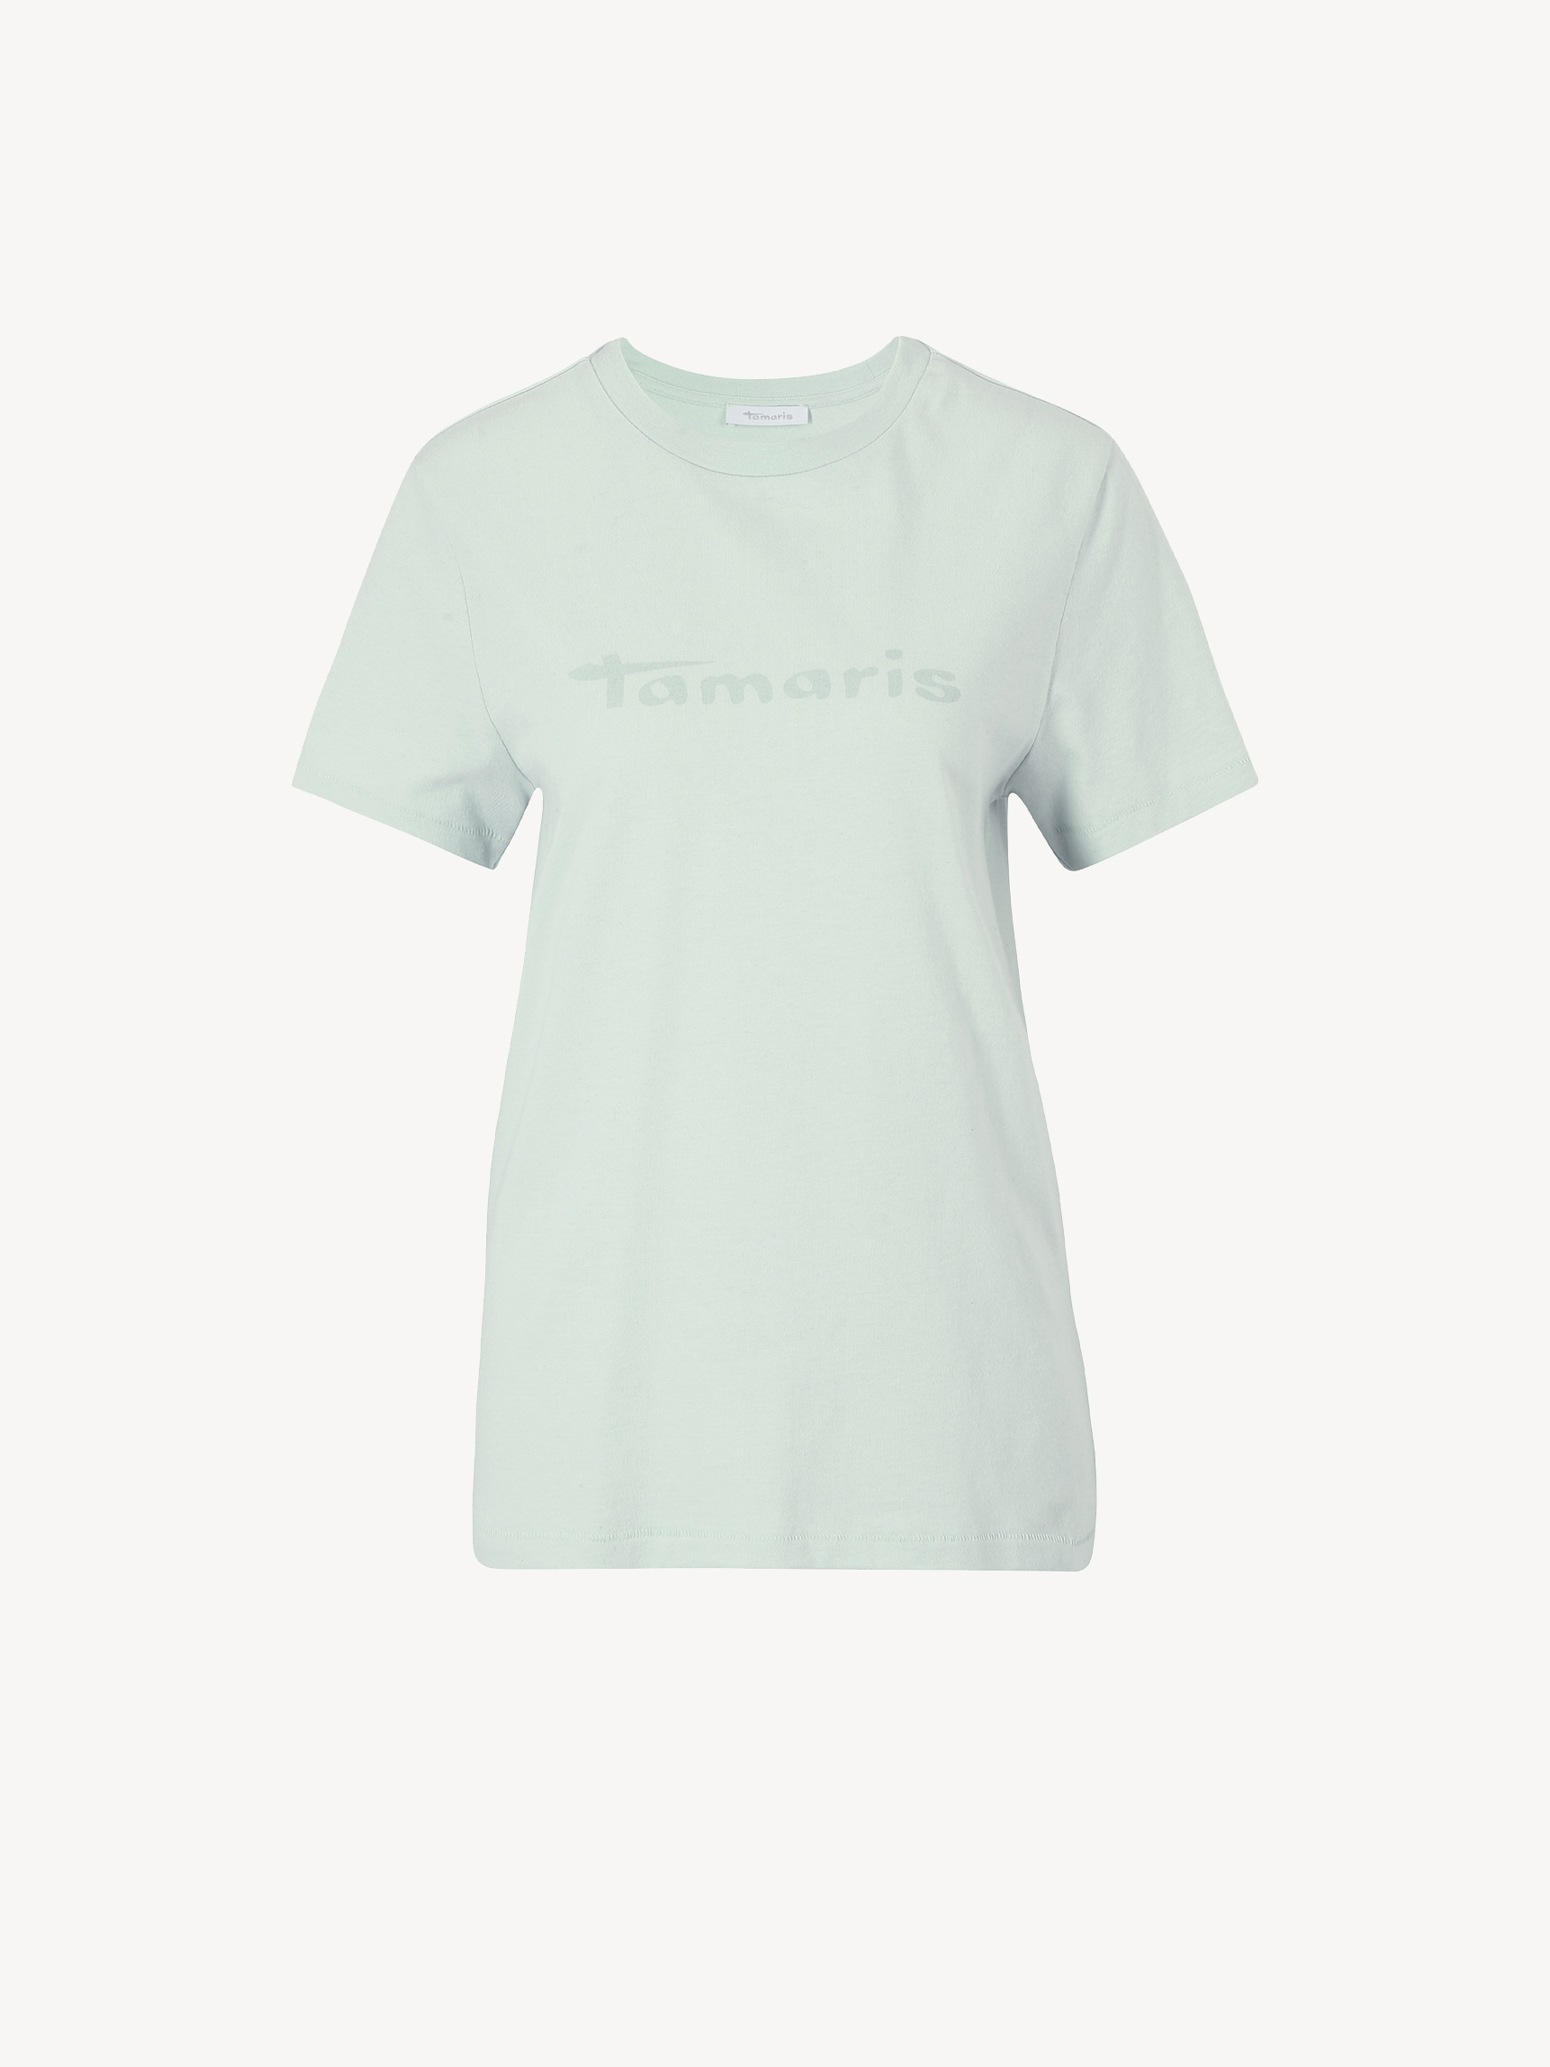 Buy Tamaris & online Shirts Tops now